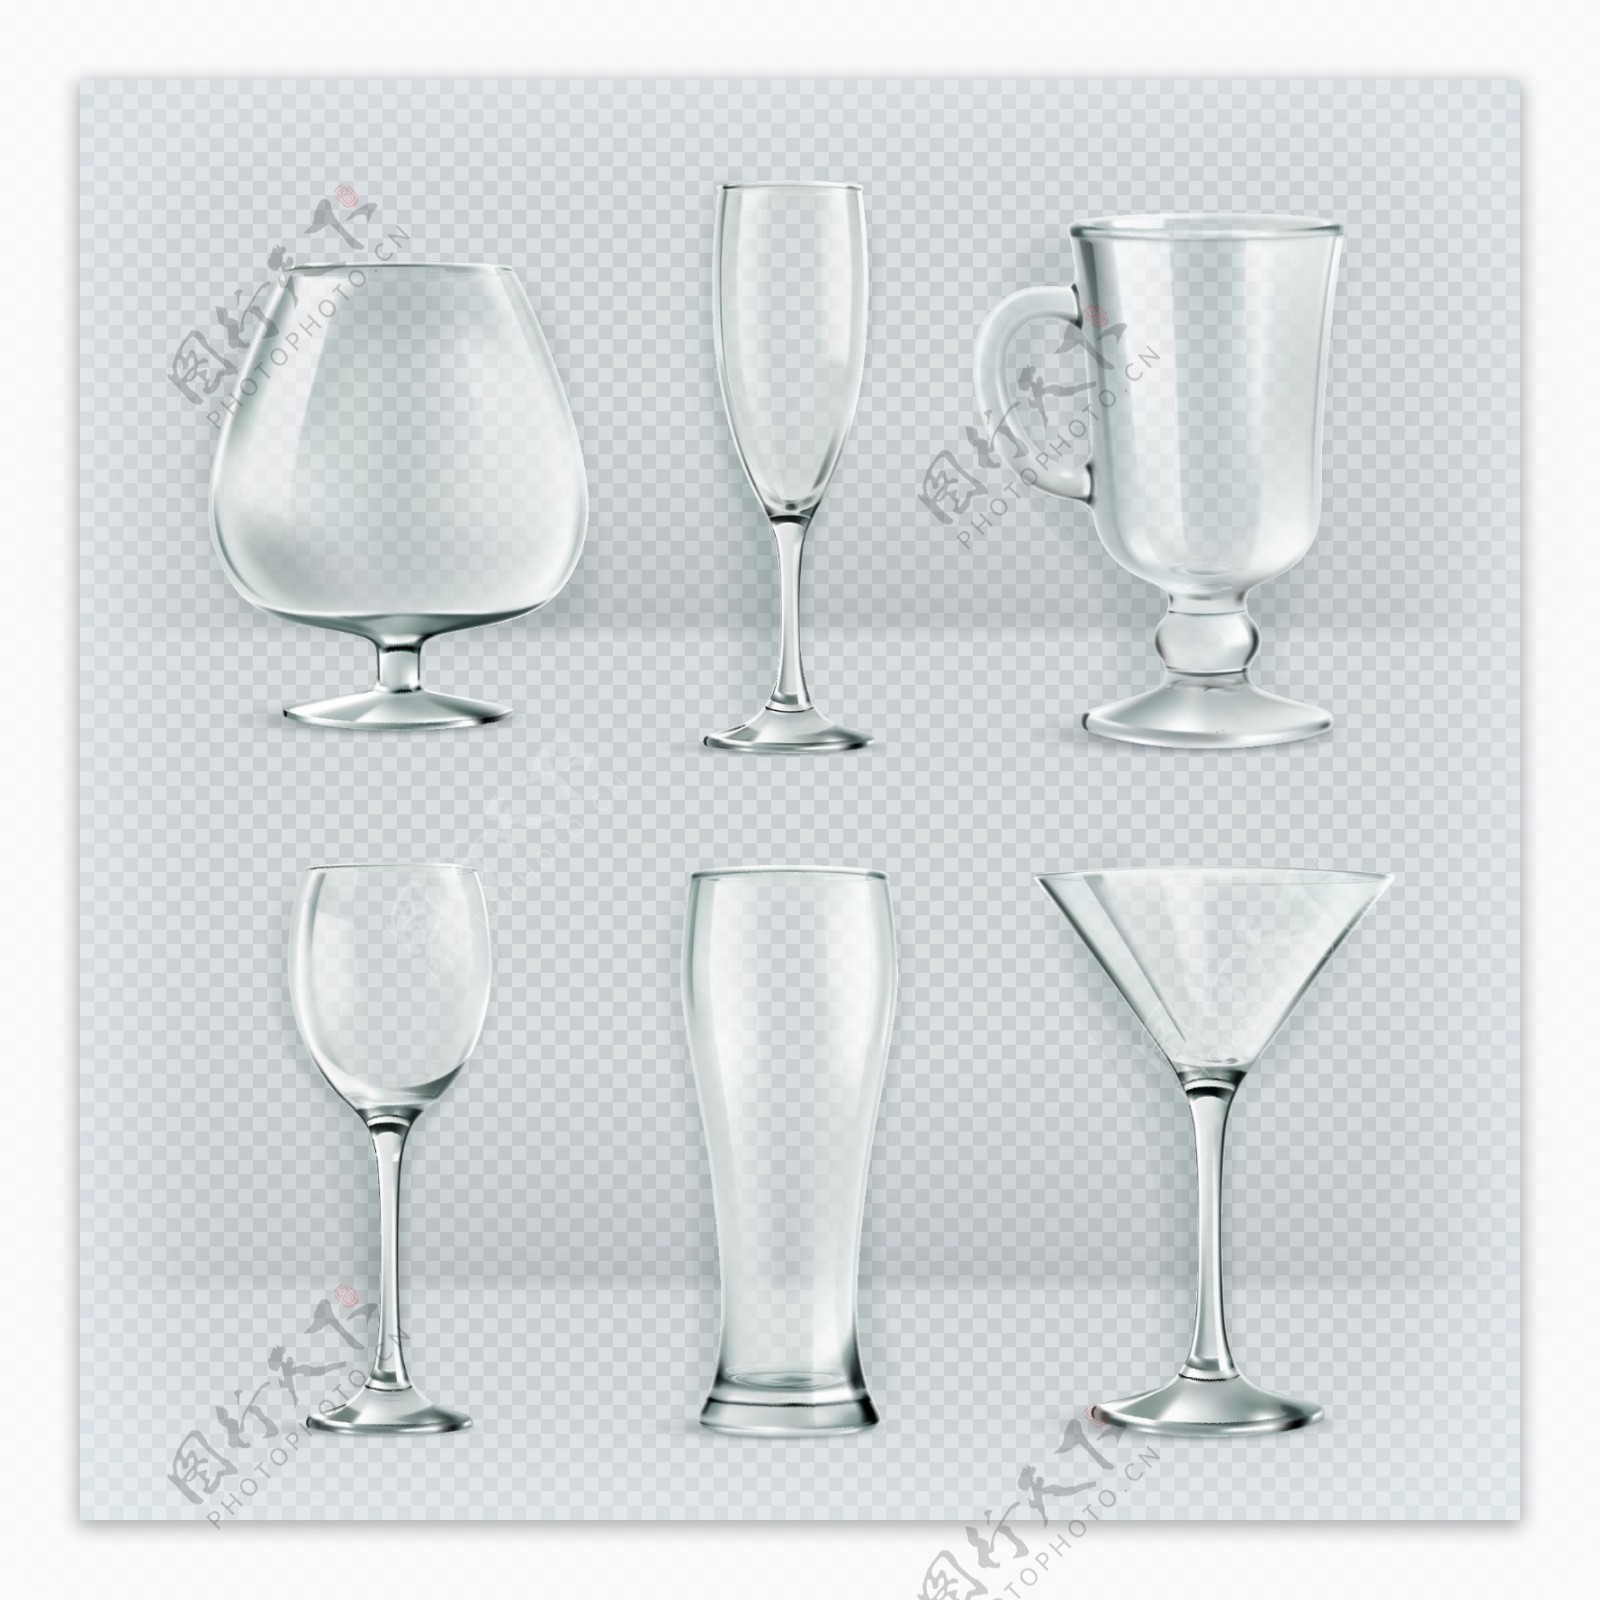 6款创意玻璃杯设计矢量素材